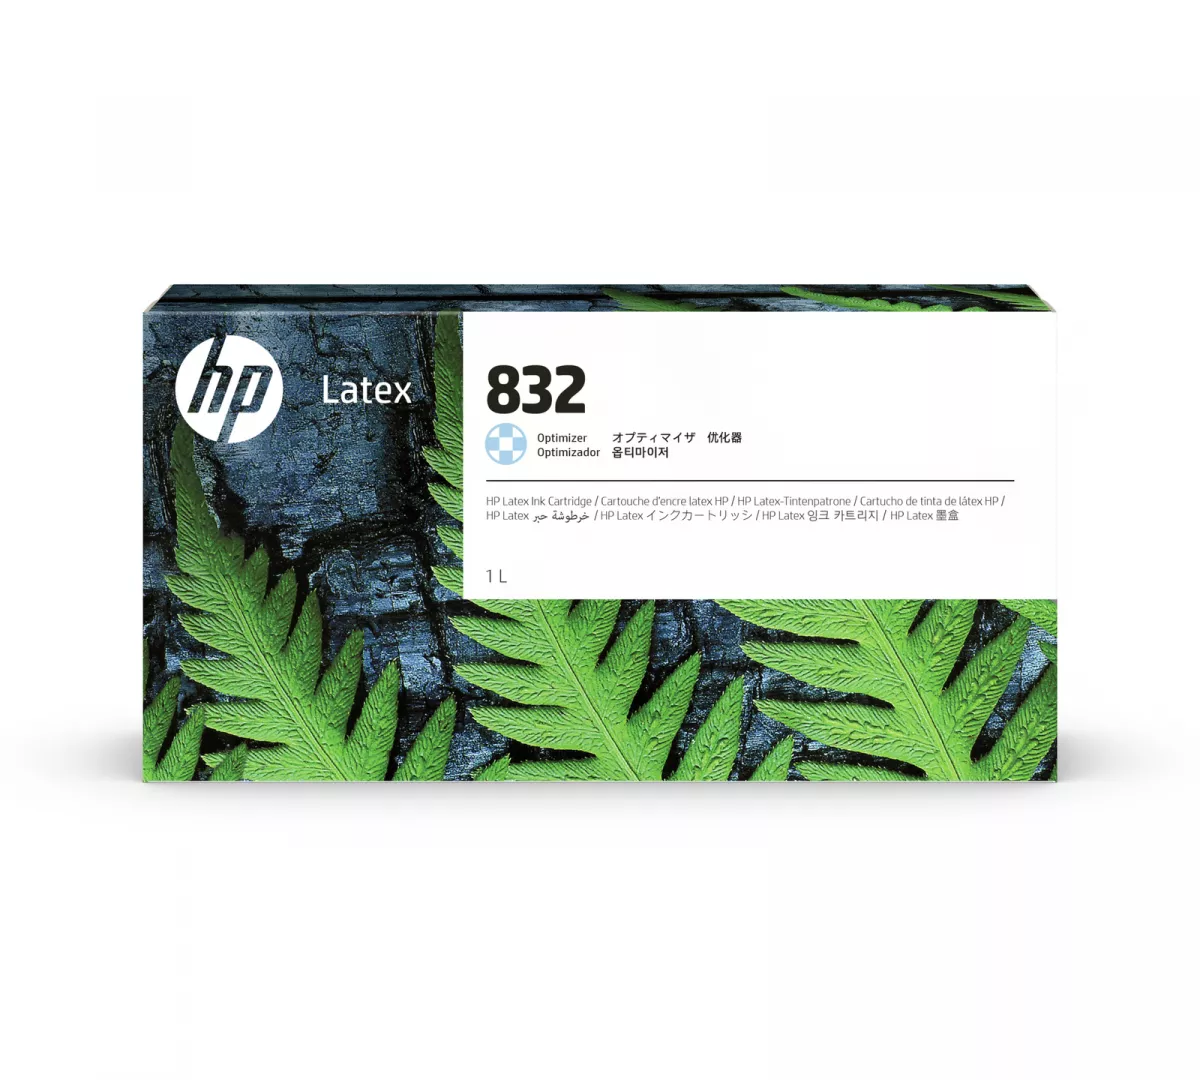 HP 832 Optimizer Latex Ink Cartridge 1 L 1